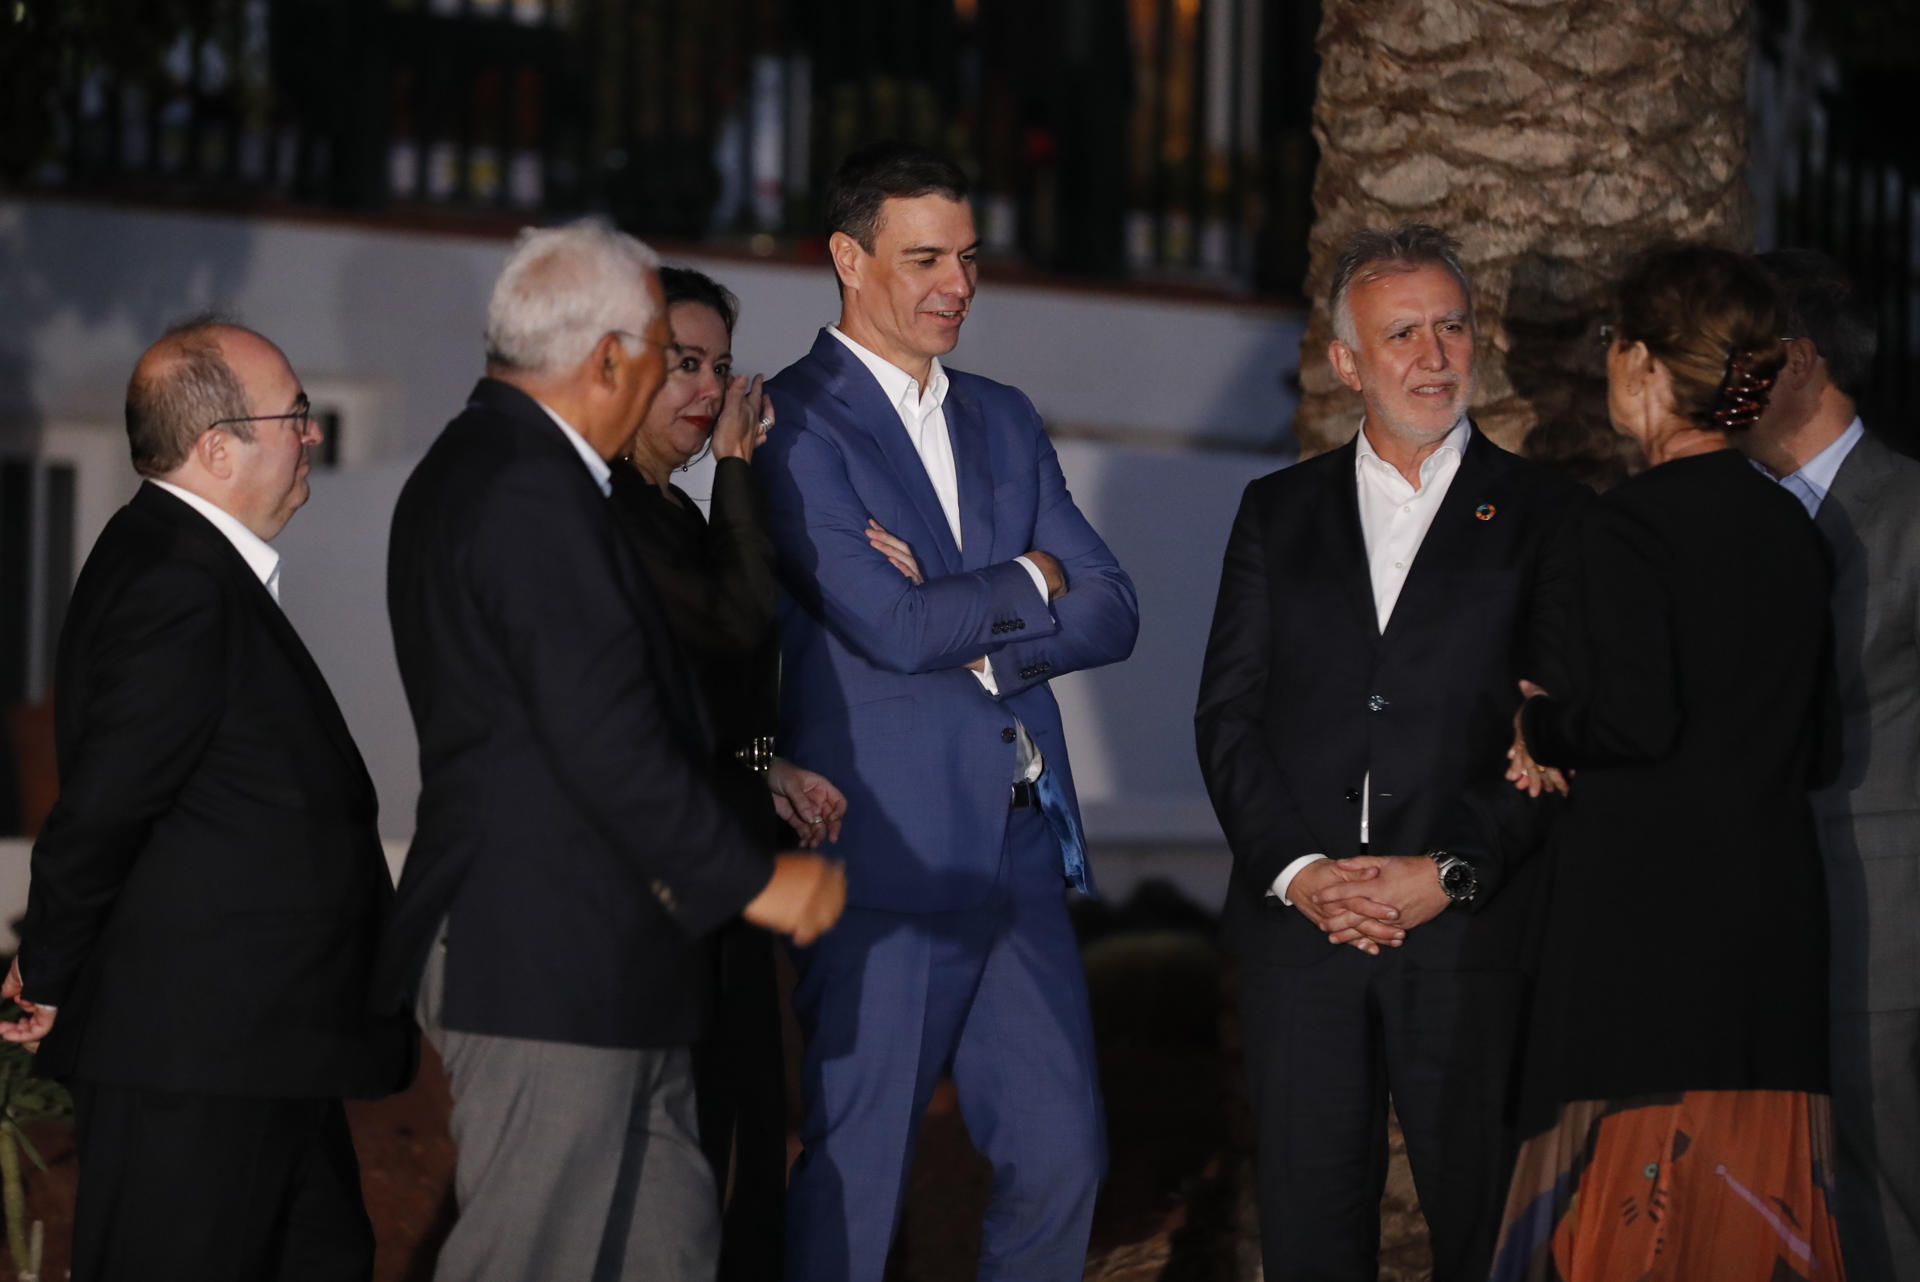 El presidente del Gobierno, Pedro Sánchez (c), conversa con el primer ministro de Portugal, Antonio Costa (2-i), y el presidente de Canarias, Ángel Víctor Torres (2-d), durante su última visita a Lanzarote, el pasado 14 de marzo, en la Casa de José Saramago. EFE/Elvira Urquijo